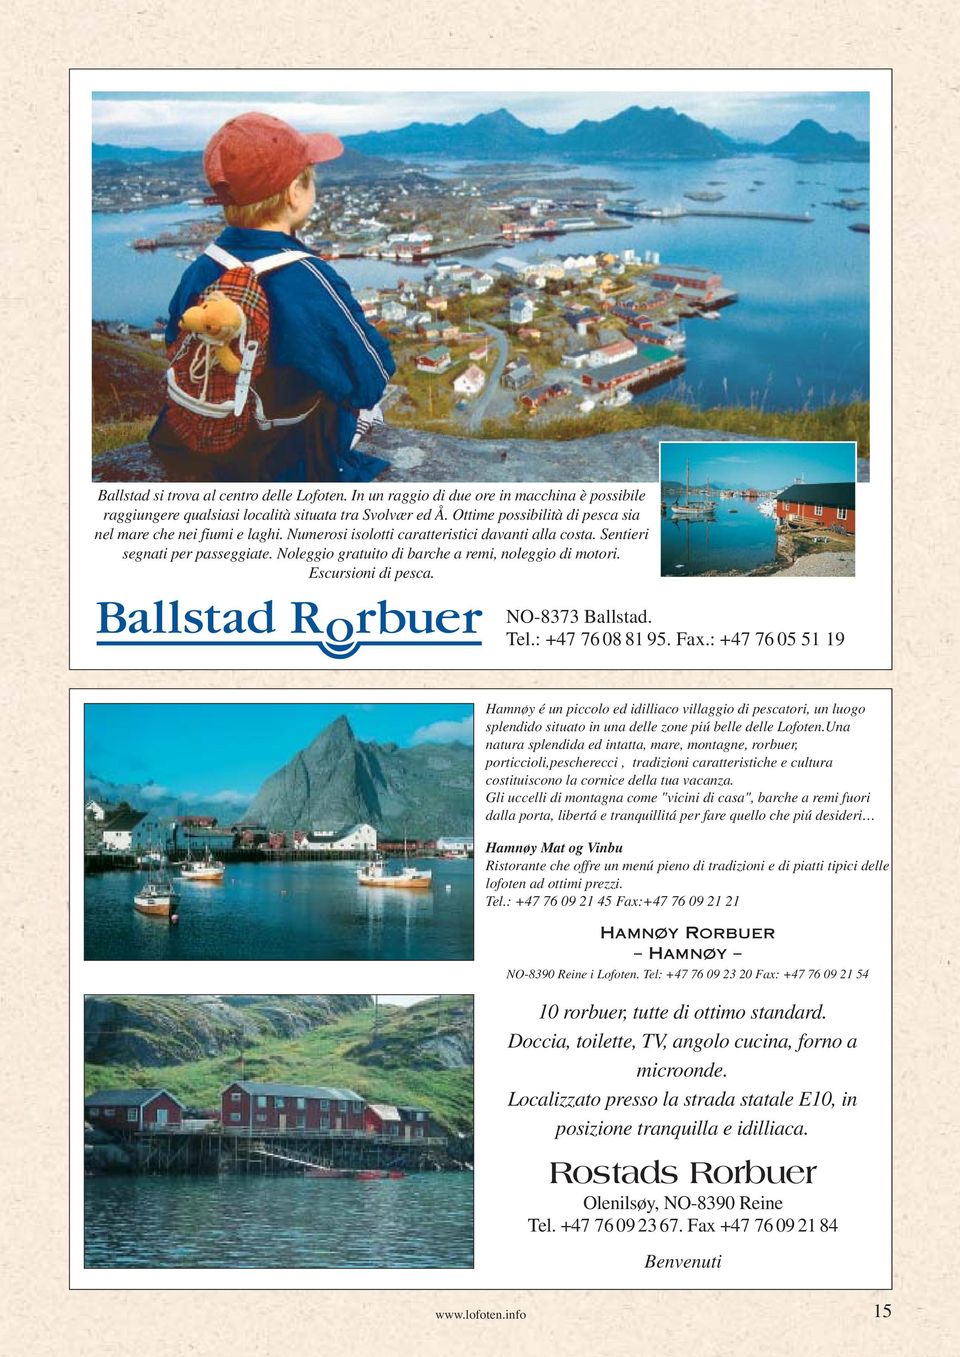 Noleggio gratuito di barche a remi, noleggio di motori. Escursioni di pesca. NO-8373 Ballstad. Tel.: +47 76 08 81 95. Fax.